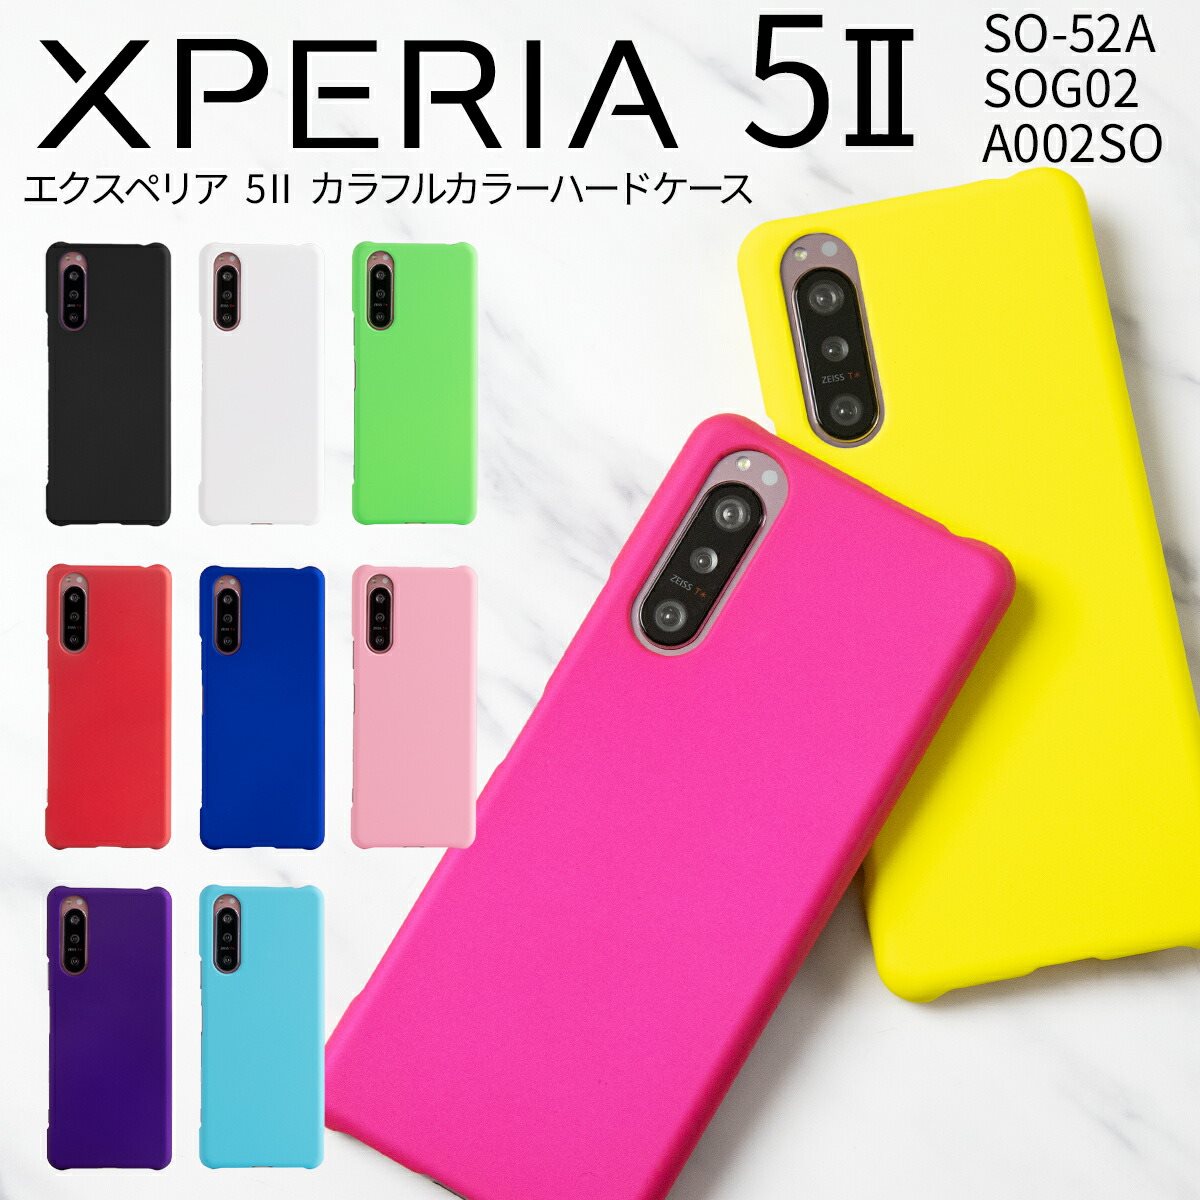 楽天市場 Xperia 5 Ii Sog02 カバー スマホケース 韓国 Sog02 A002so かわいい かっこいい おすすめ 人気 スマホ ケース エクスペリア スマホカバー 携帯ケース カラフルカラーハードケース 名入れスマホケースエックスモール